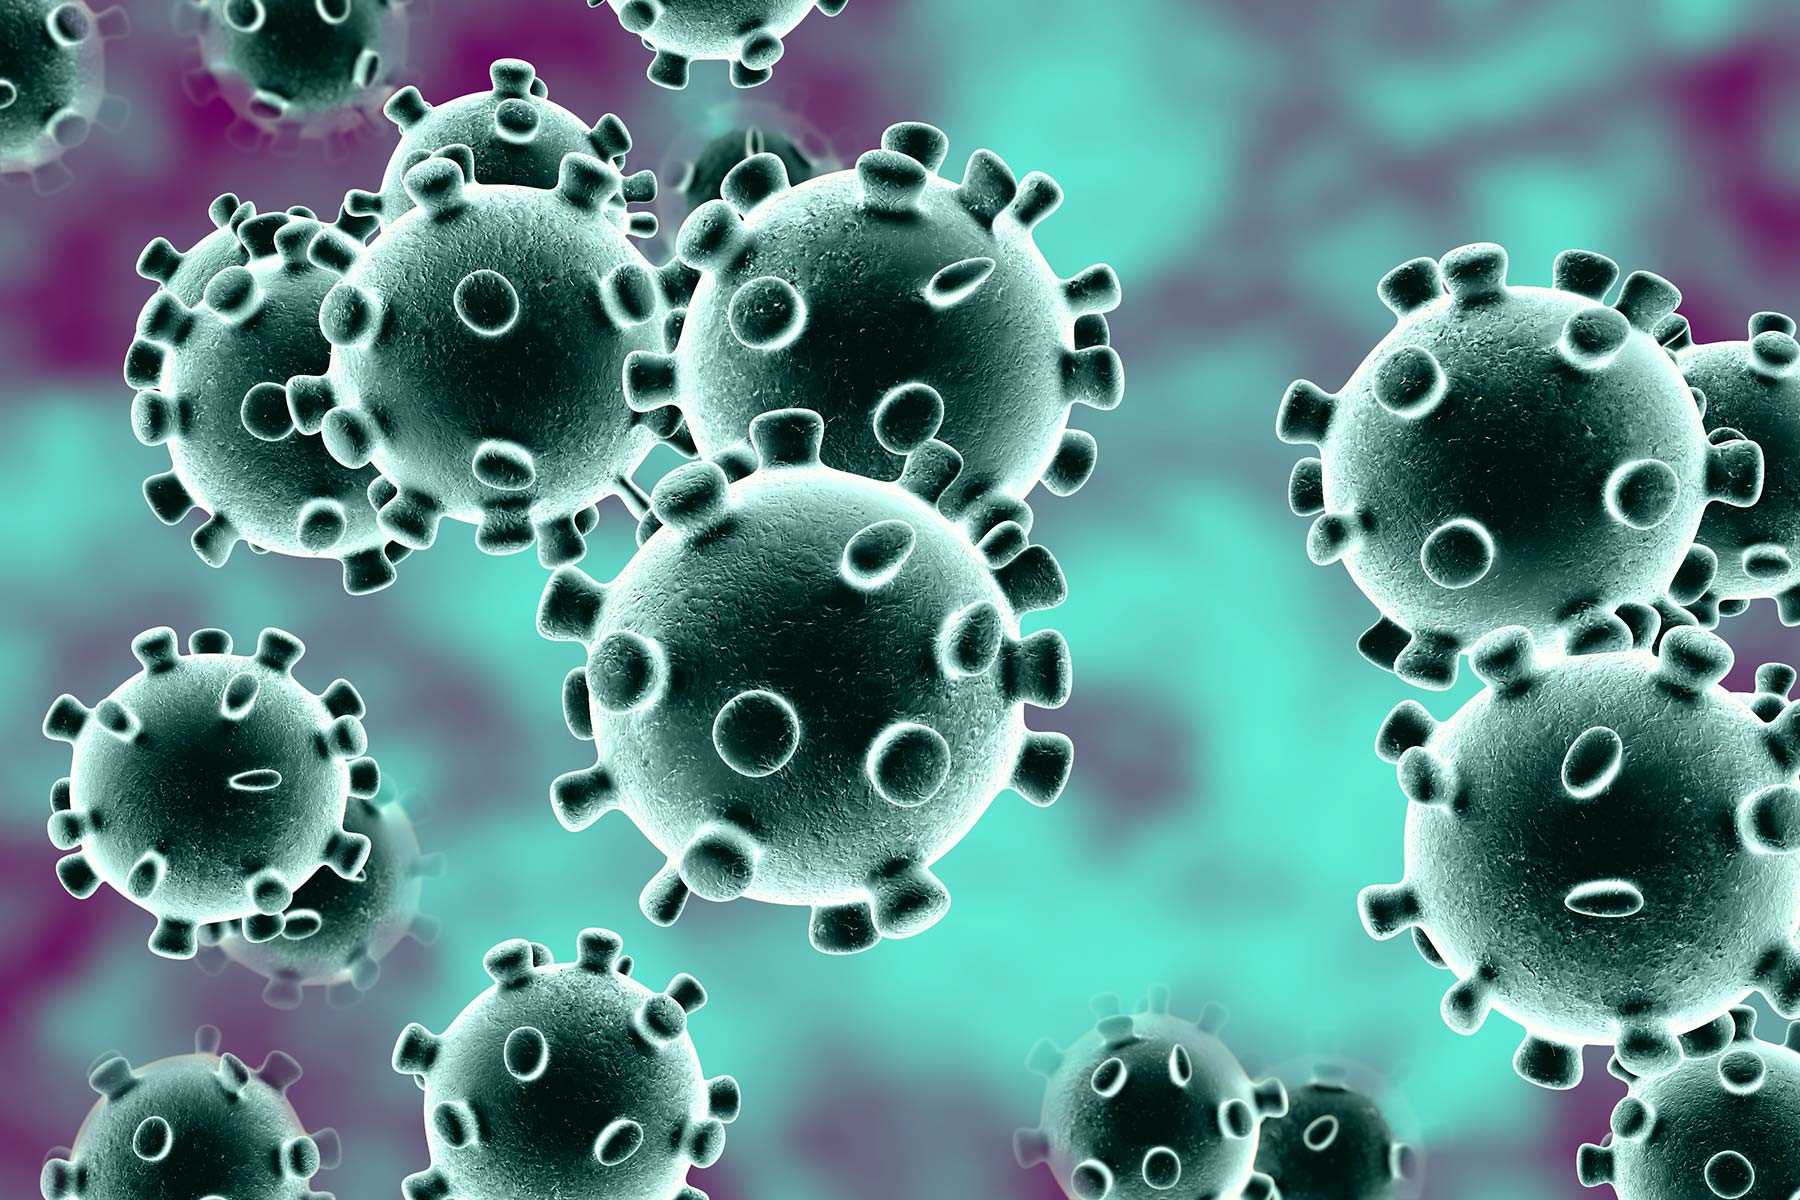 “Falamos em algo que não se resolve em semanas, mas em alguns meses”, avalia pesquisador sobre coronavírus